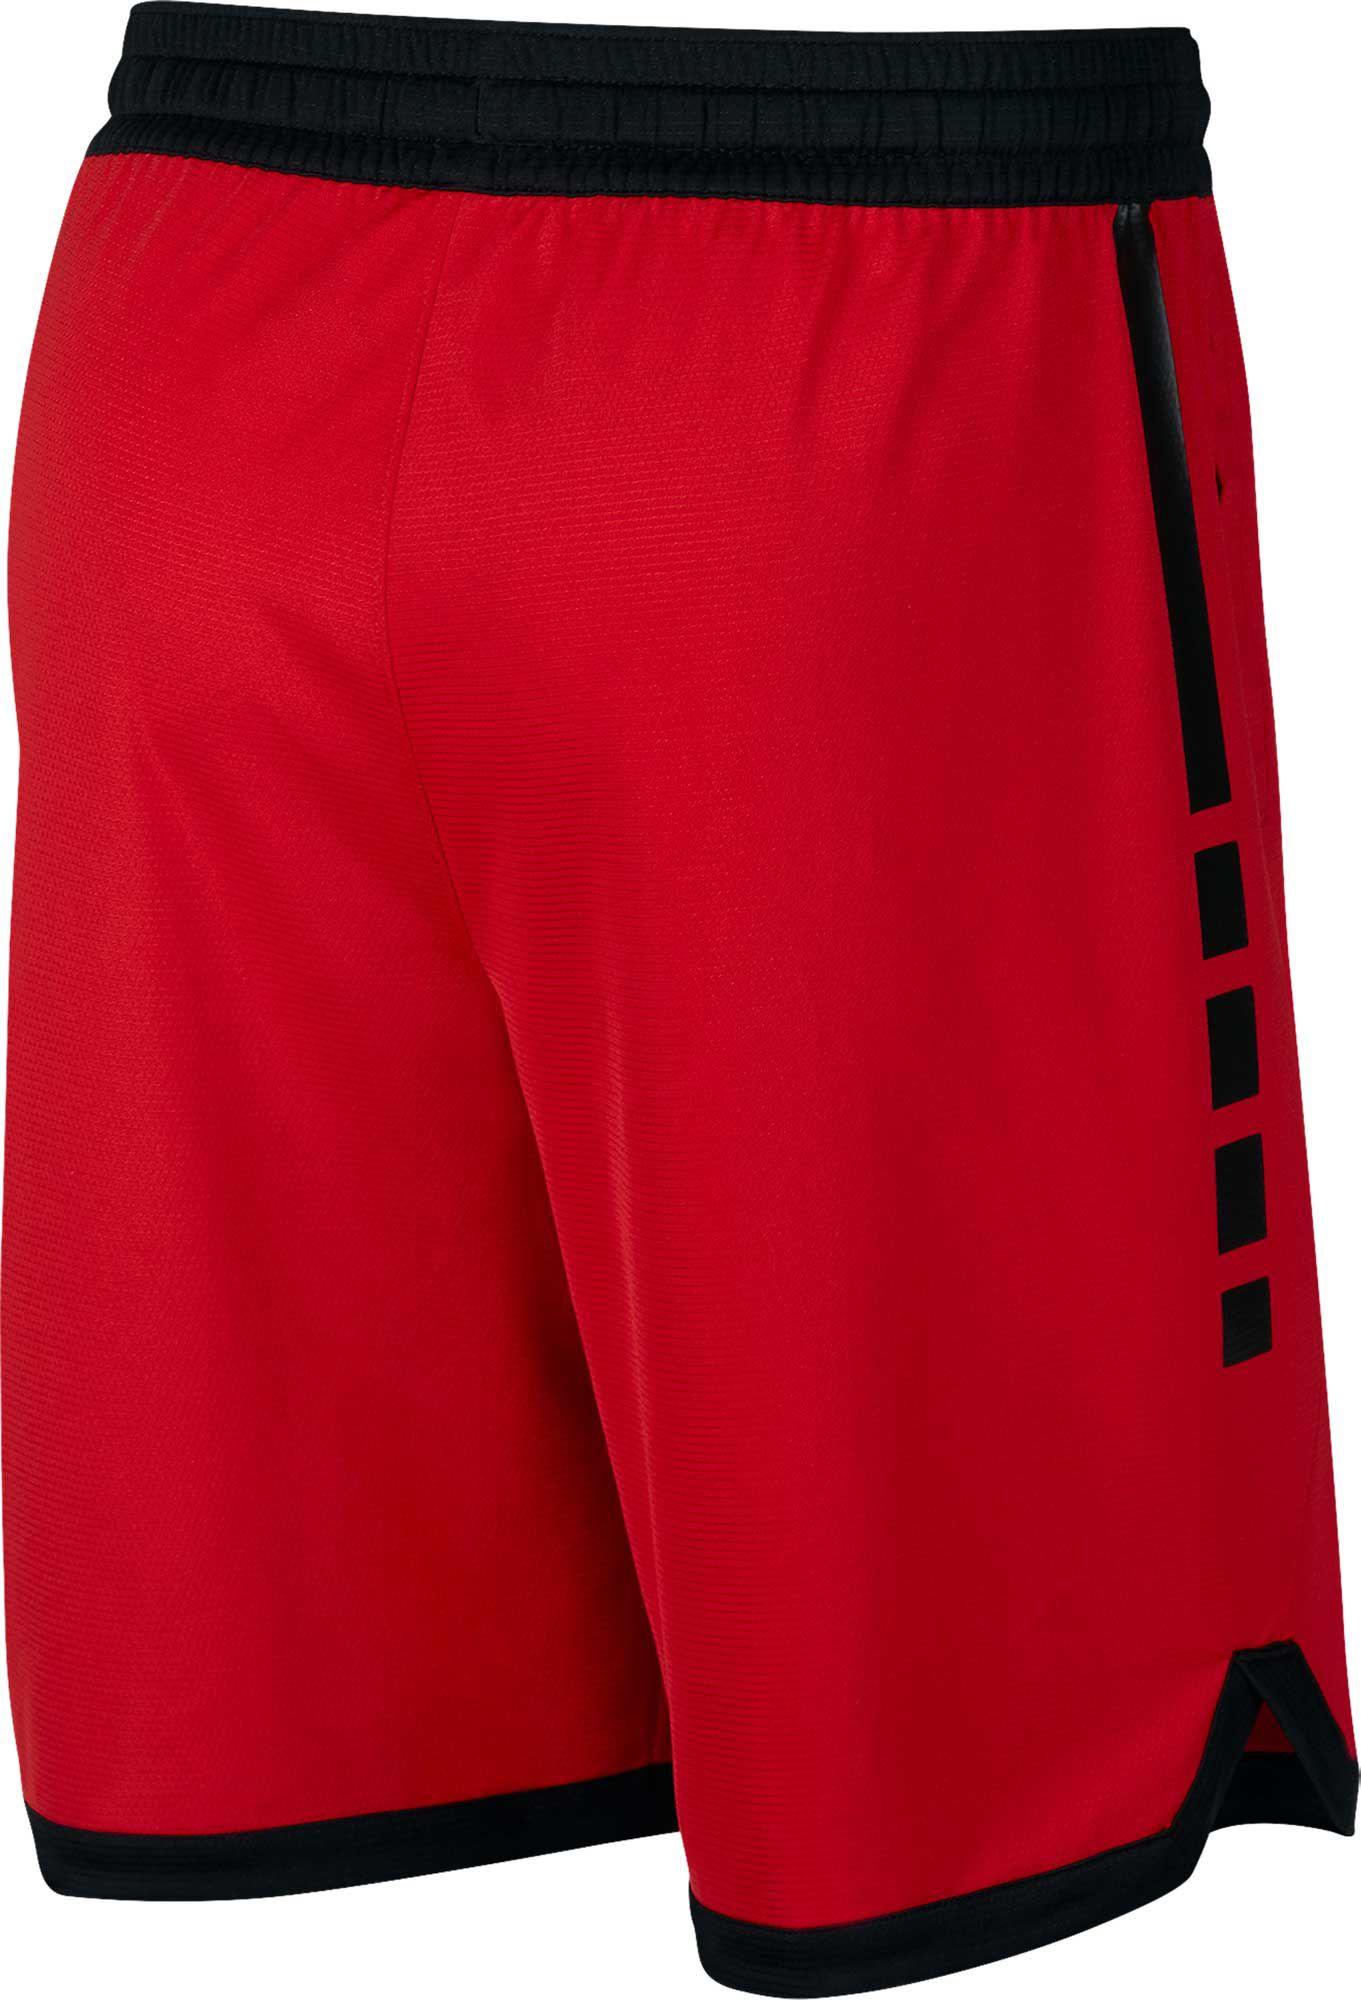 Lyst - Nike Dry Elite Stripe Basketball Shorts in Red for Men